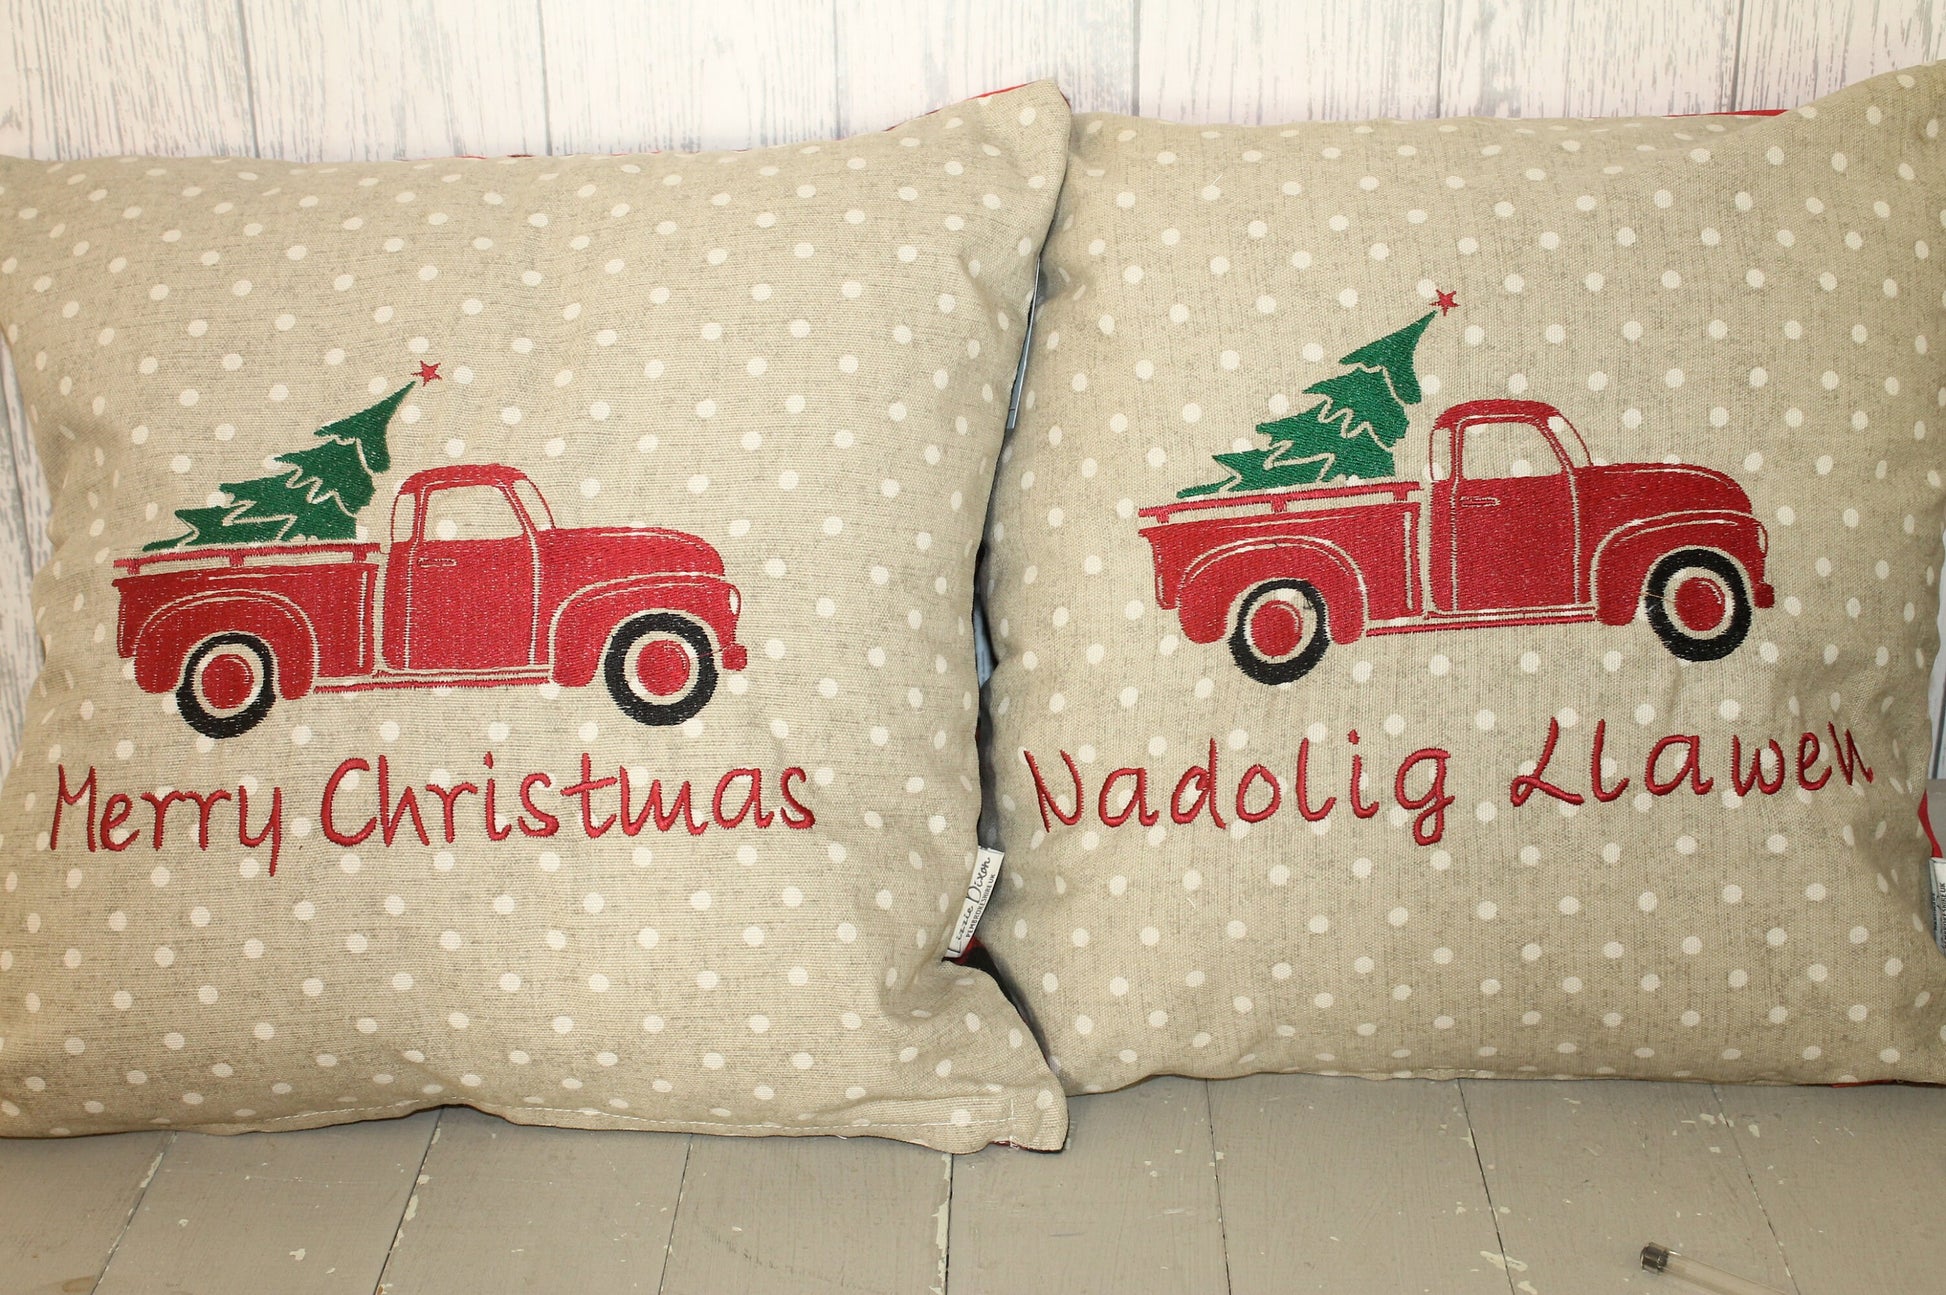 16" Nadolig Llawen Truck festive cushion -